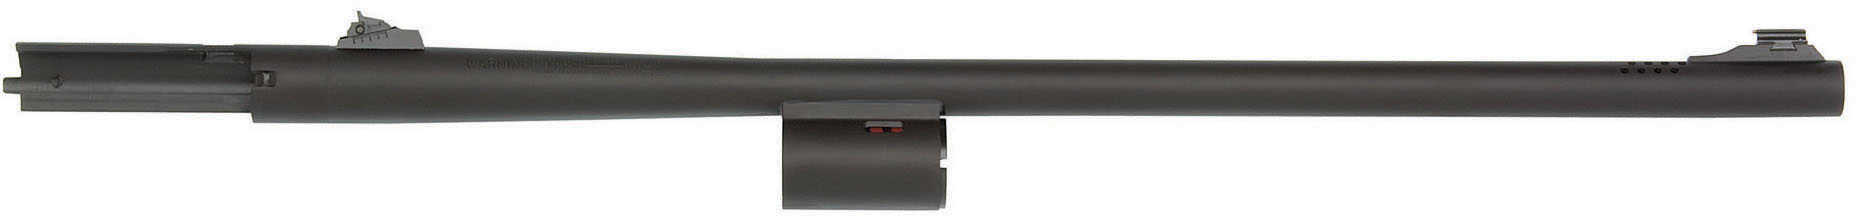 Mossberg Matte Blued Fully Rifled 12 Gauge Barrel With Sights For Model 930 Md: 93010